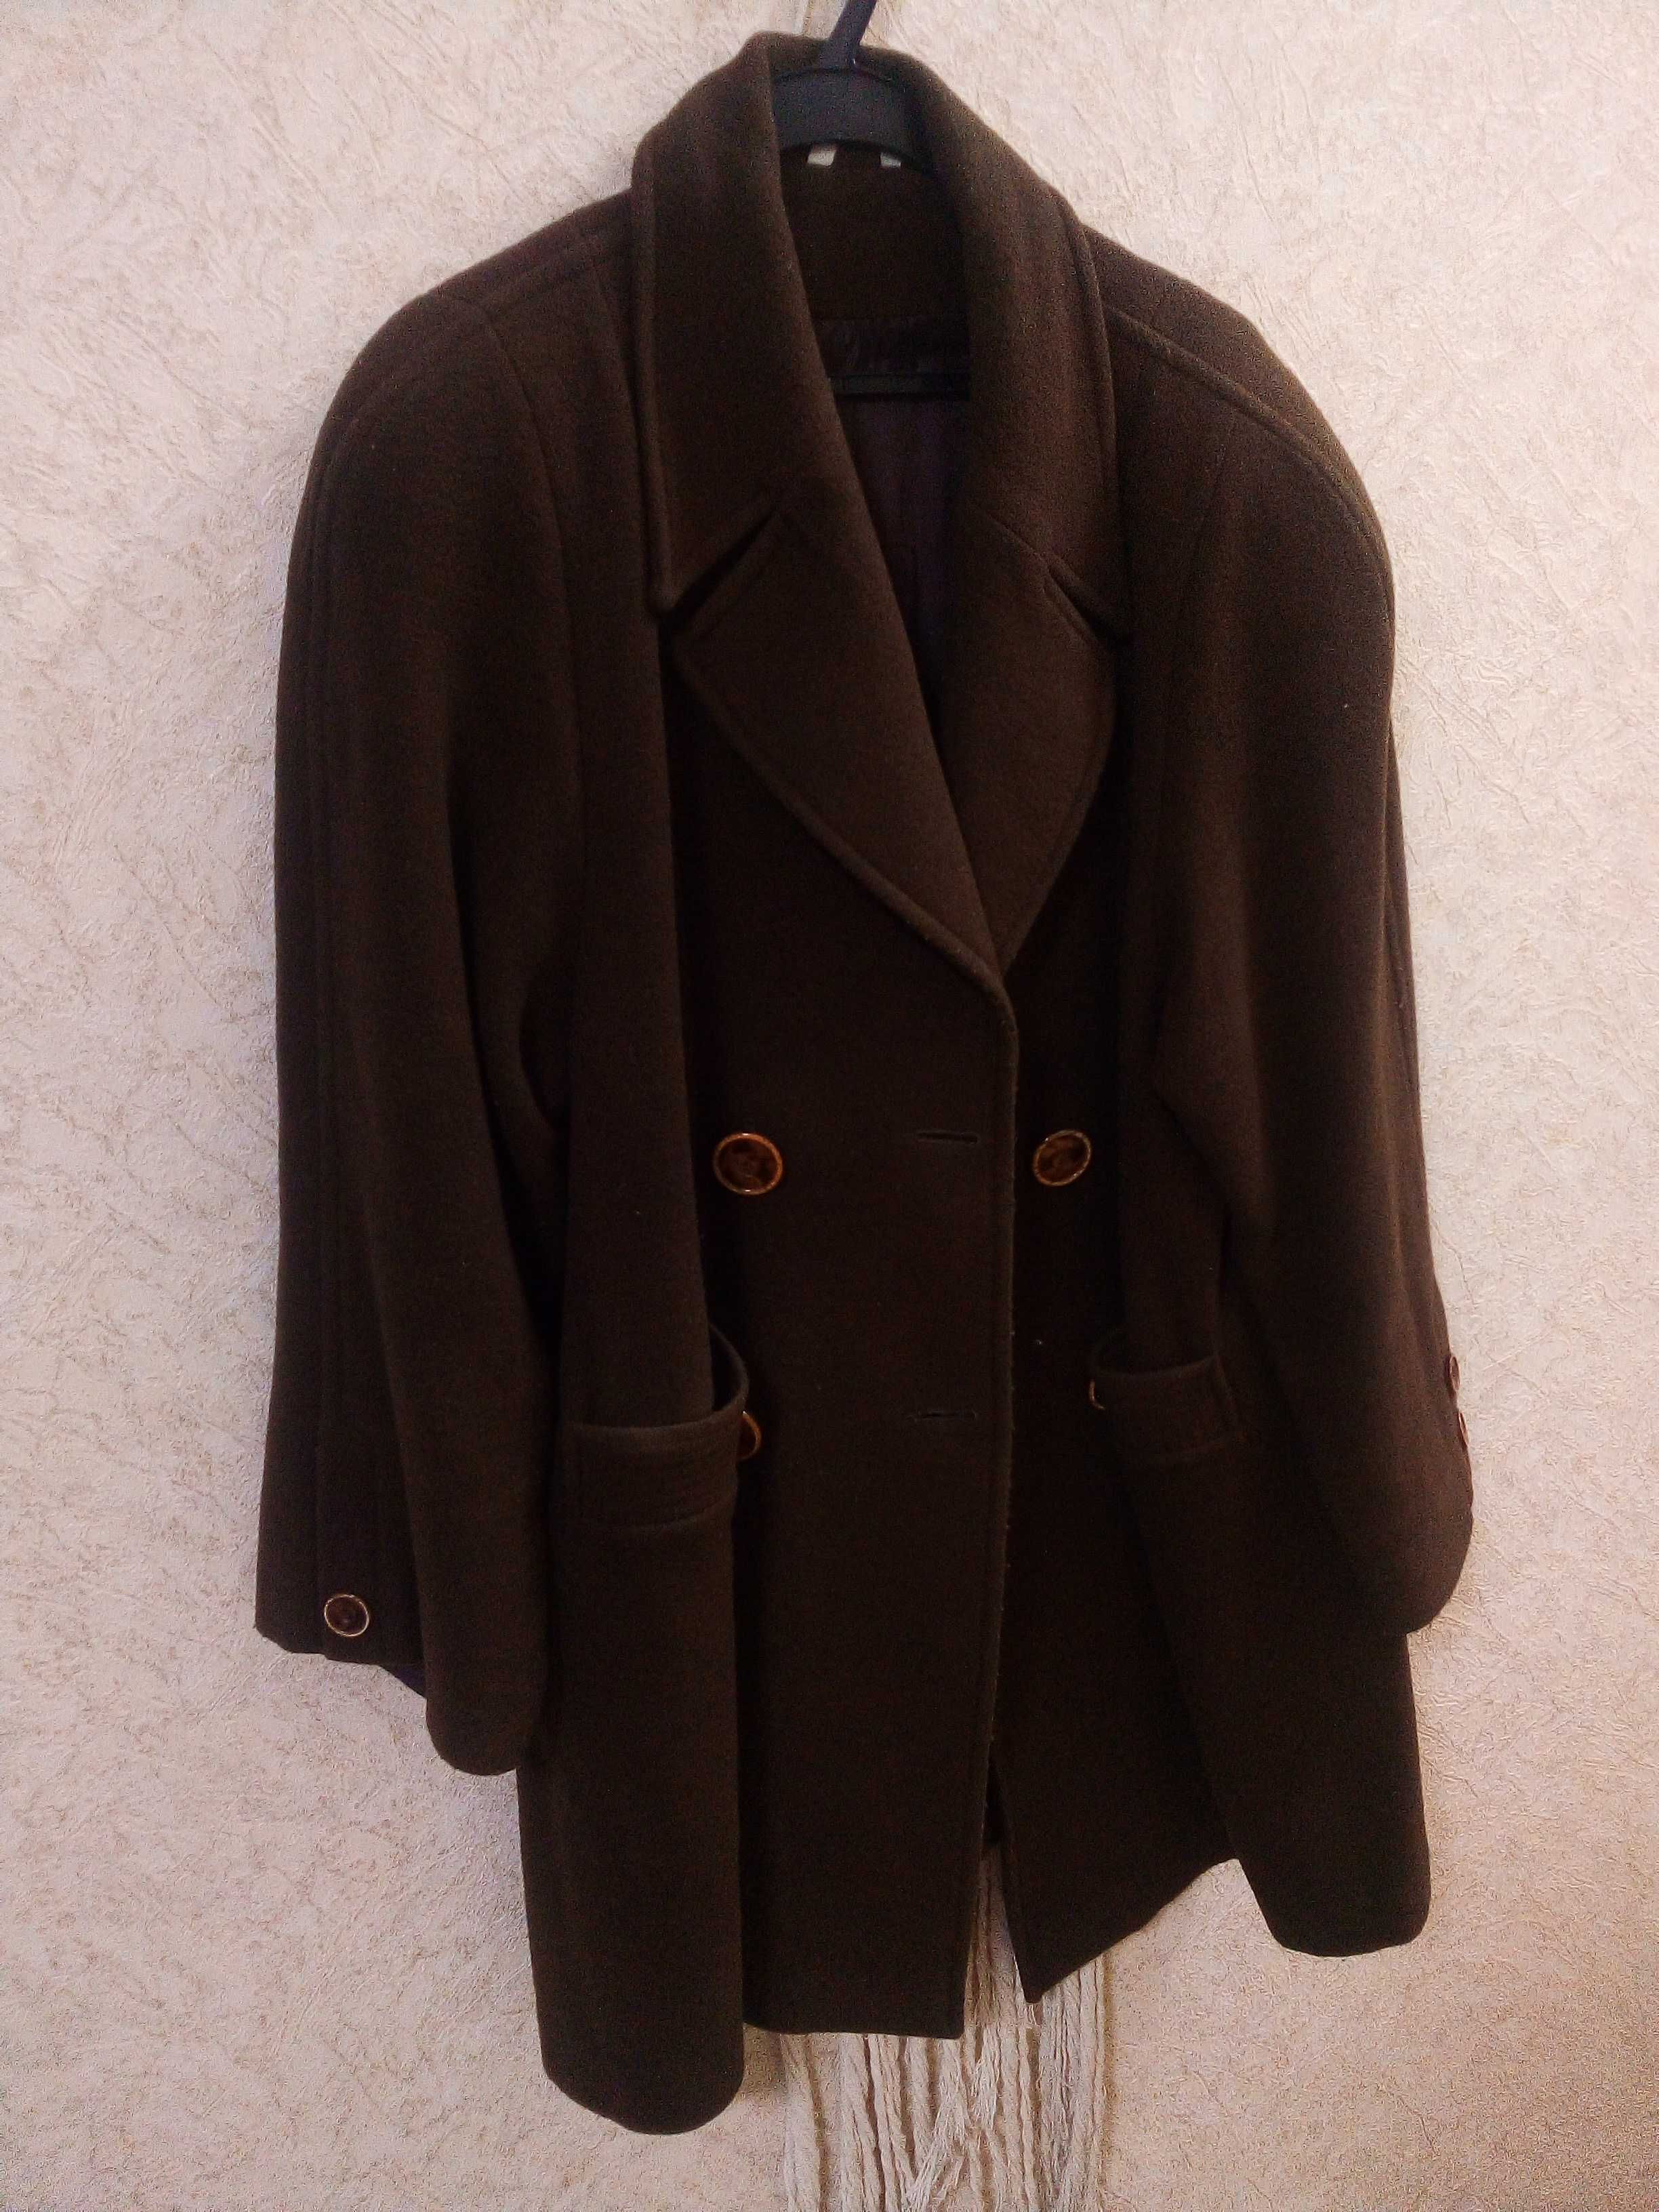 Теплый пиджак полупальто(Турция) кашемир размер 50-52